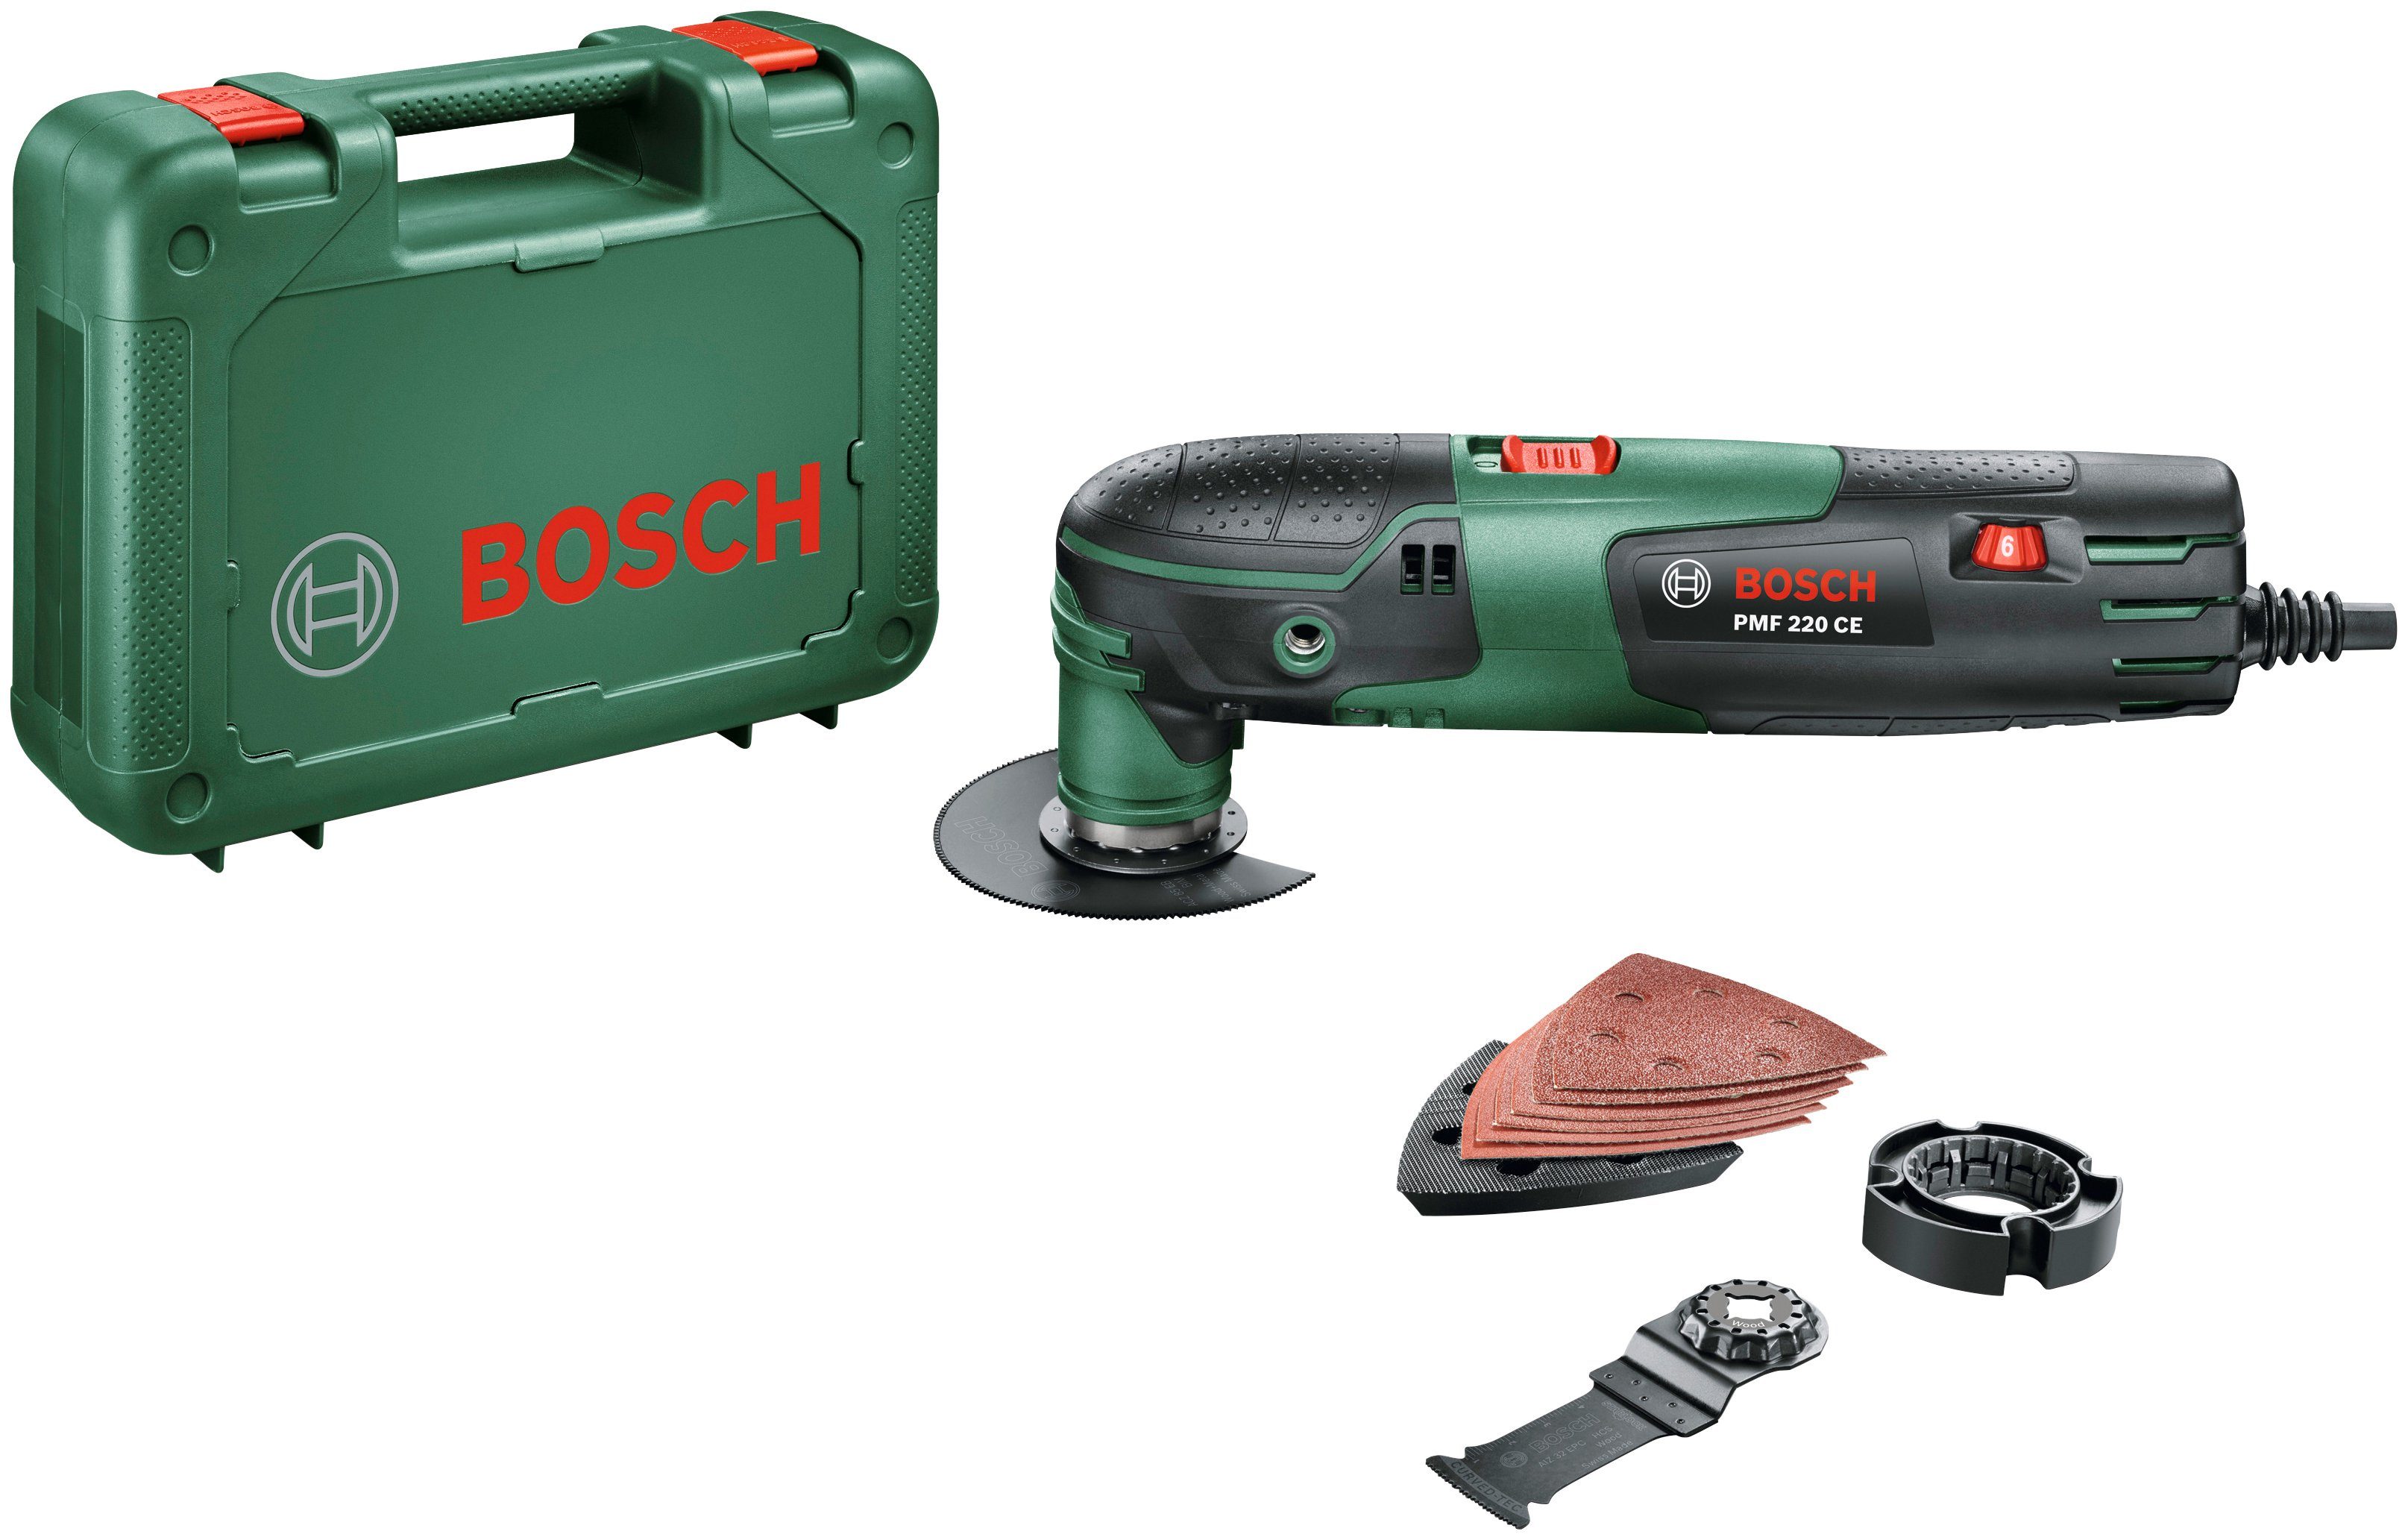 inkl. Bosch Elektro-Multifunktionswerkzeug & Garden Zubehör CE, W, 220 und Home PMF 220 Kunststoffkoffer